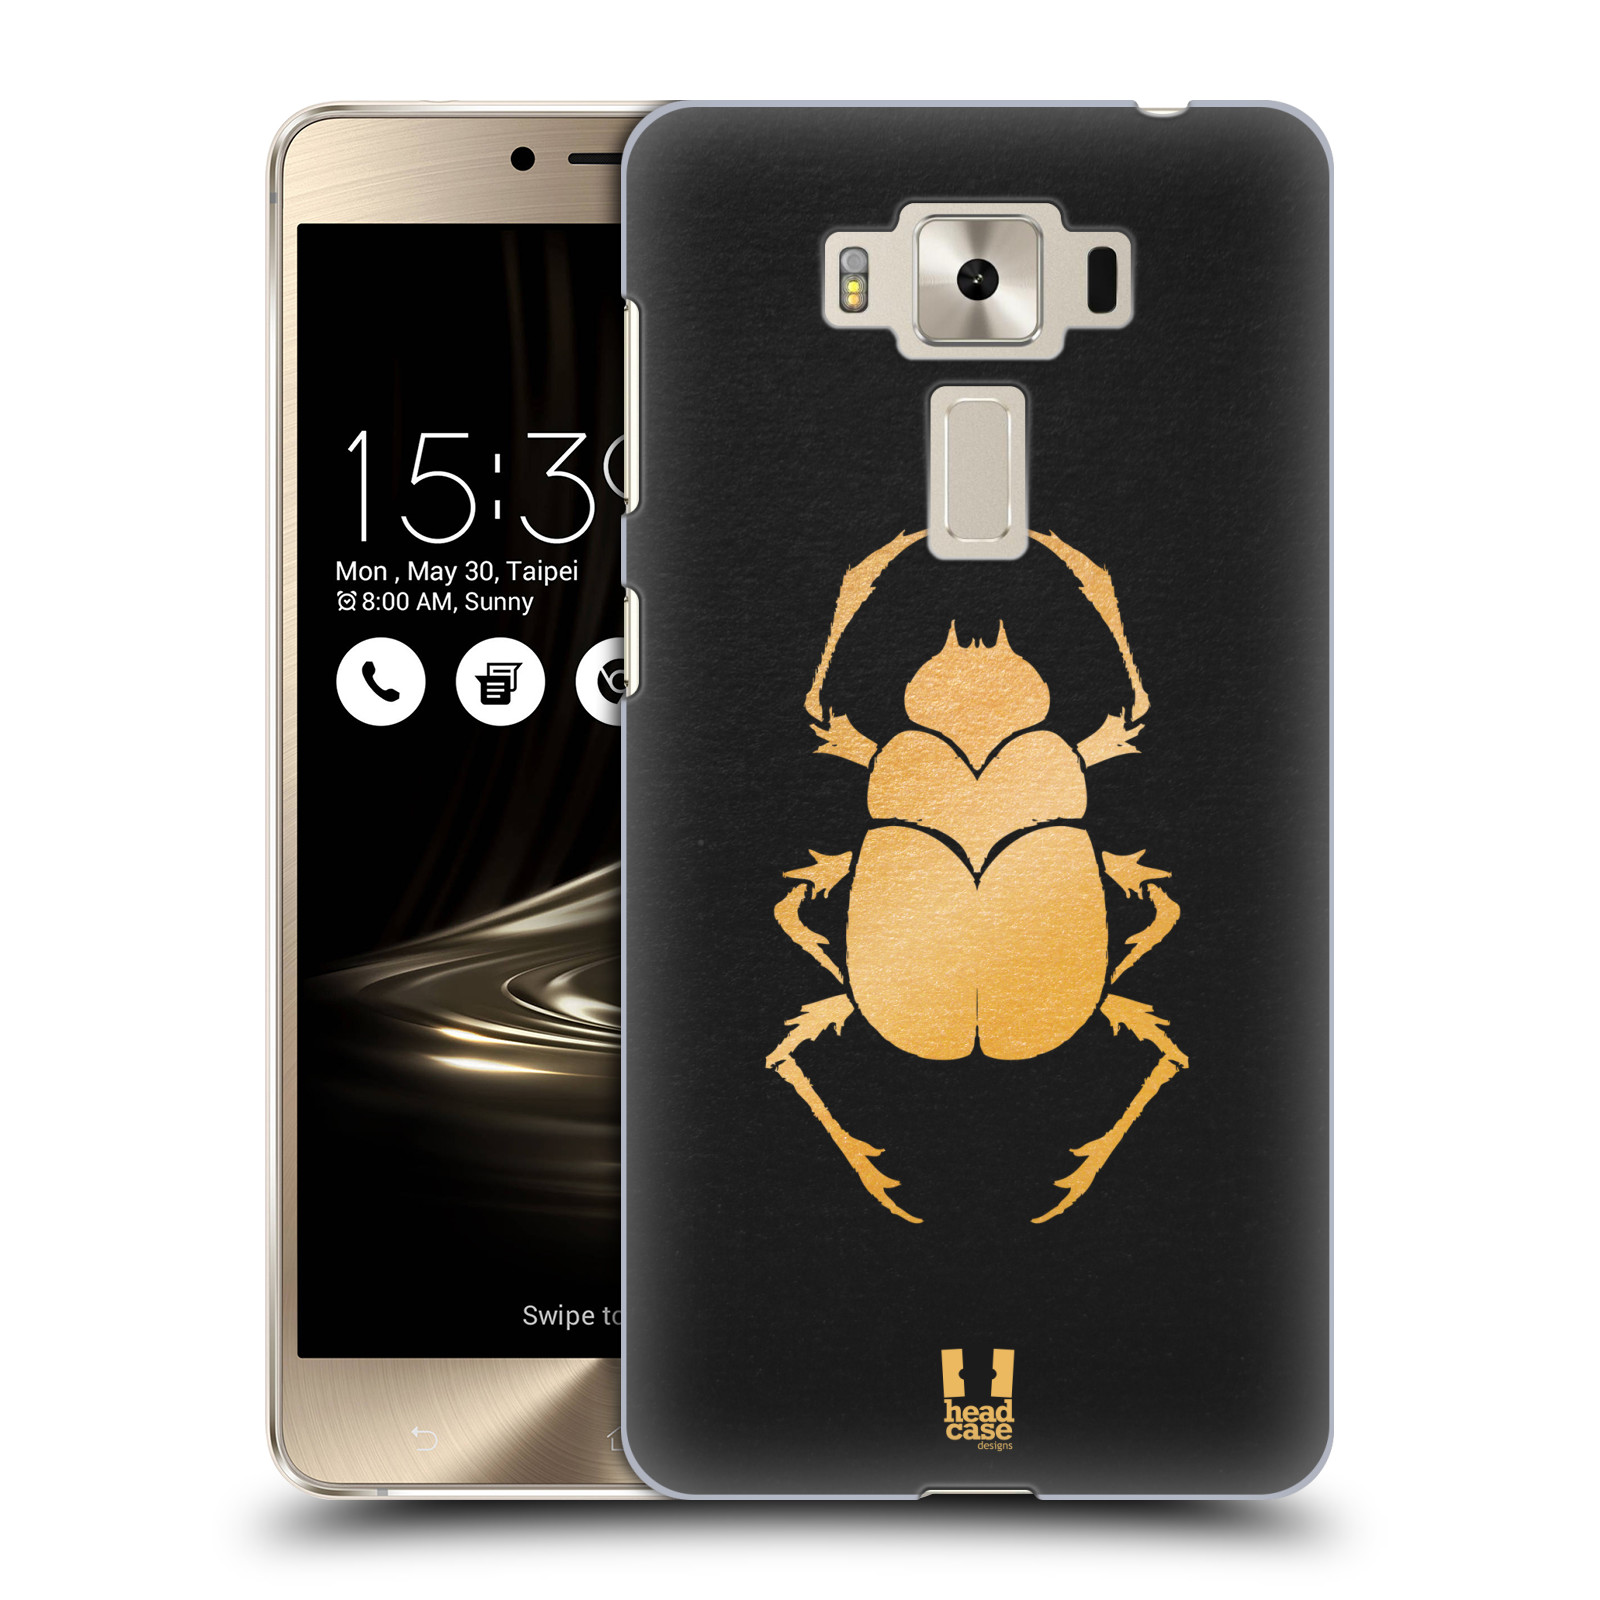 HEAD CASE plastový obal na mobil Asus Zenfone 3 DELUXE ZS550KL vzor EGYPT zlatá a černá BROUK SKARAB